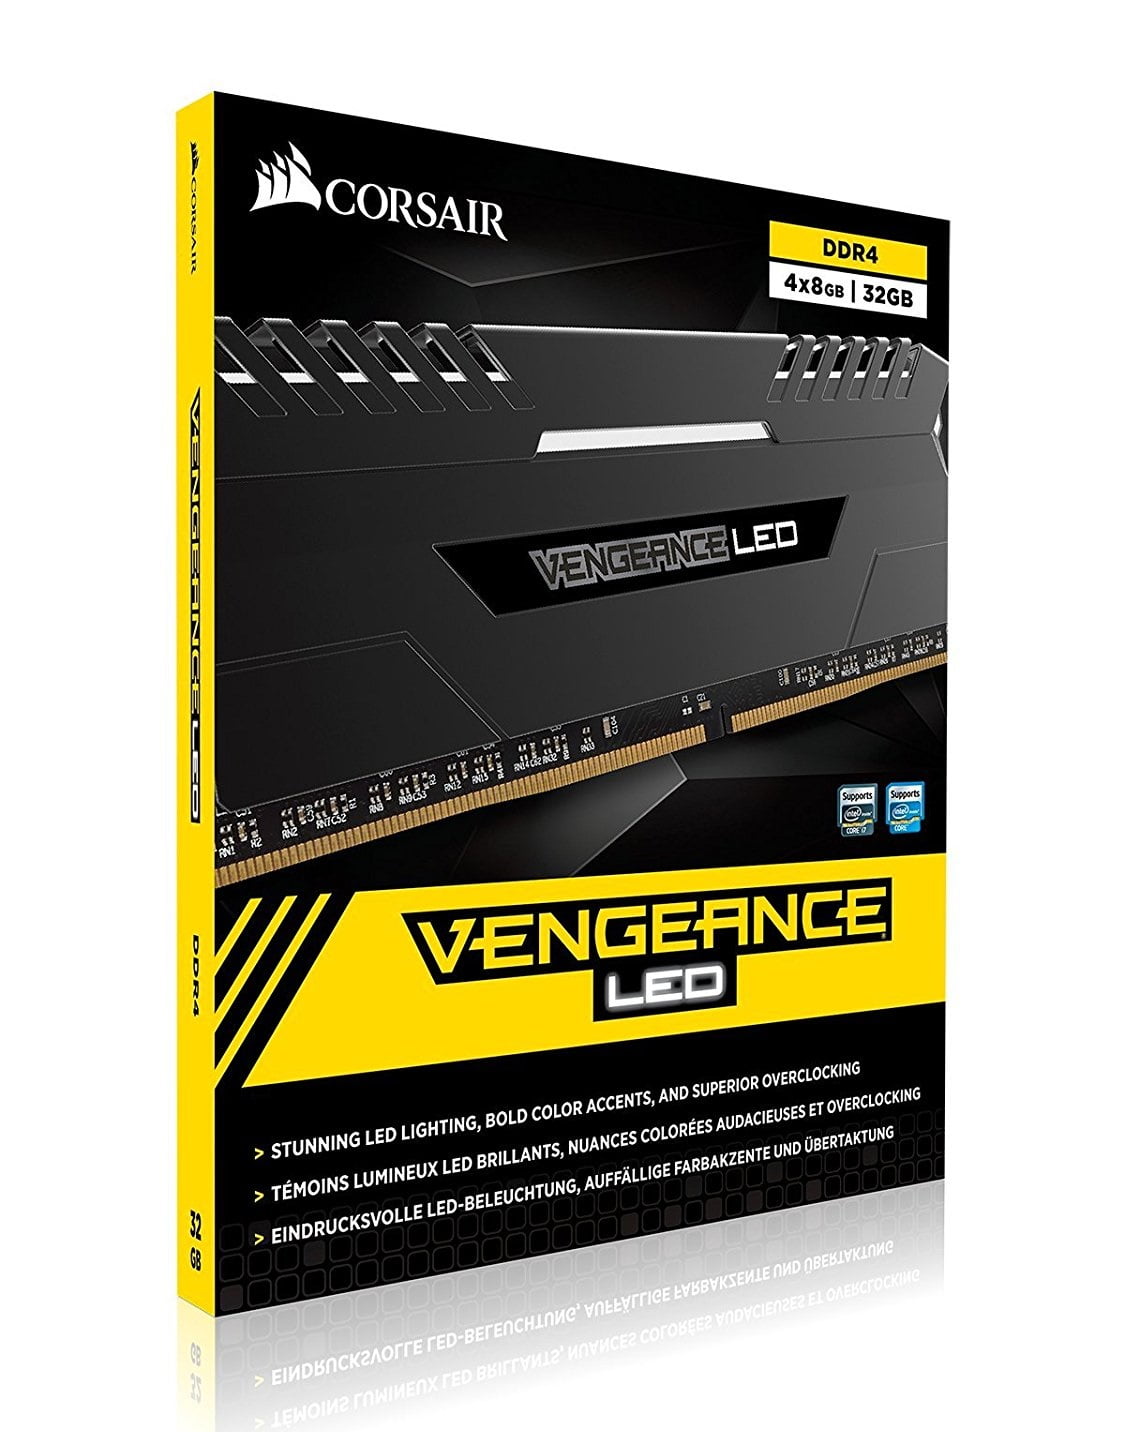 Corsair Vengeance White LED 4x8GB DDR4 3000 C15 for DDR4